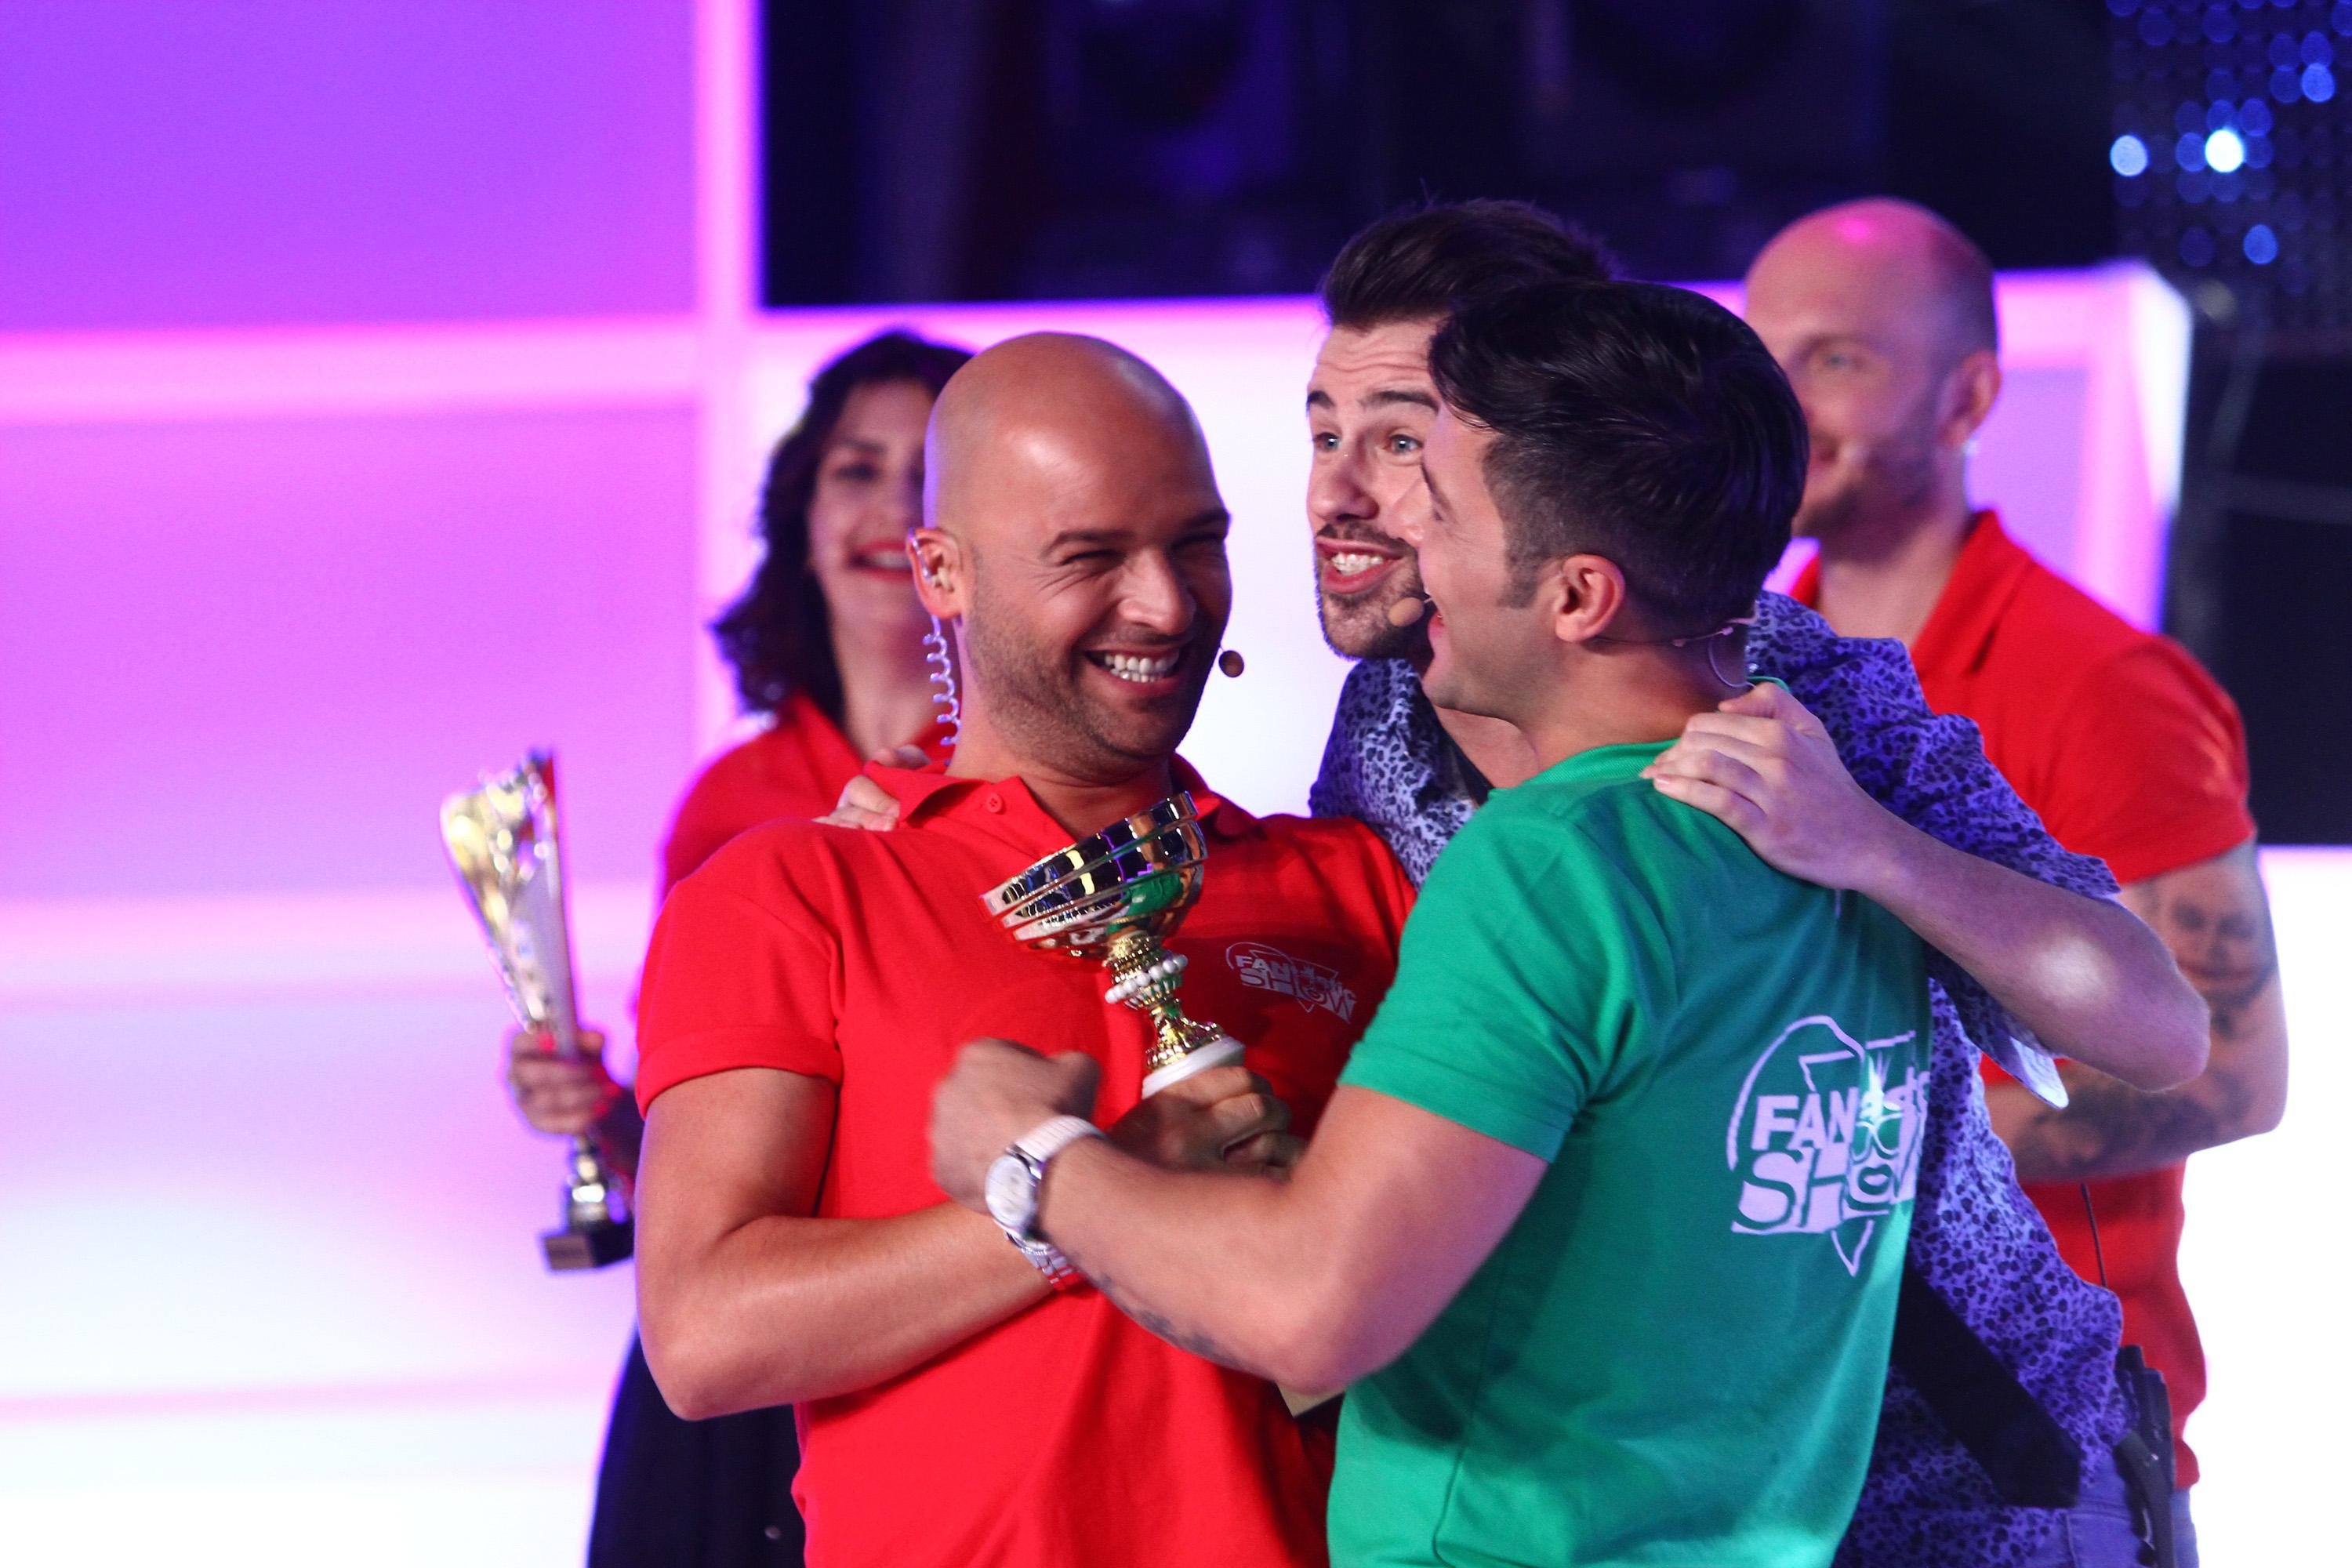 Trofeul primului sezon "FANtastic Show" merge laaa... Liviu Vârciu și Andrei Ștefănescu. Cei doi adversari au terminat la egalitate finala